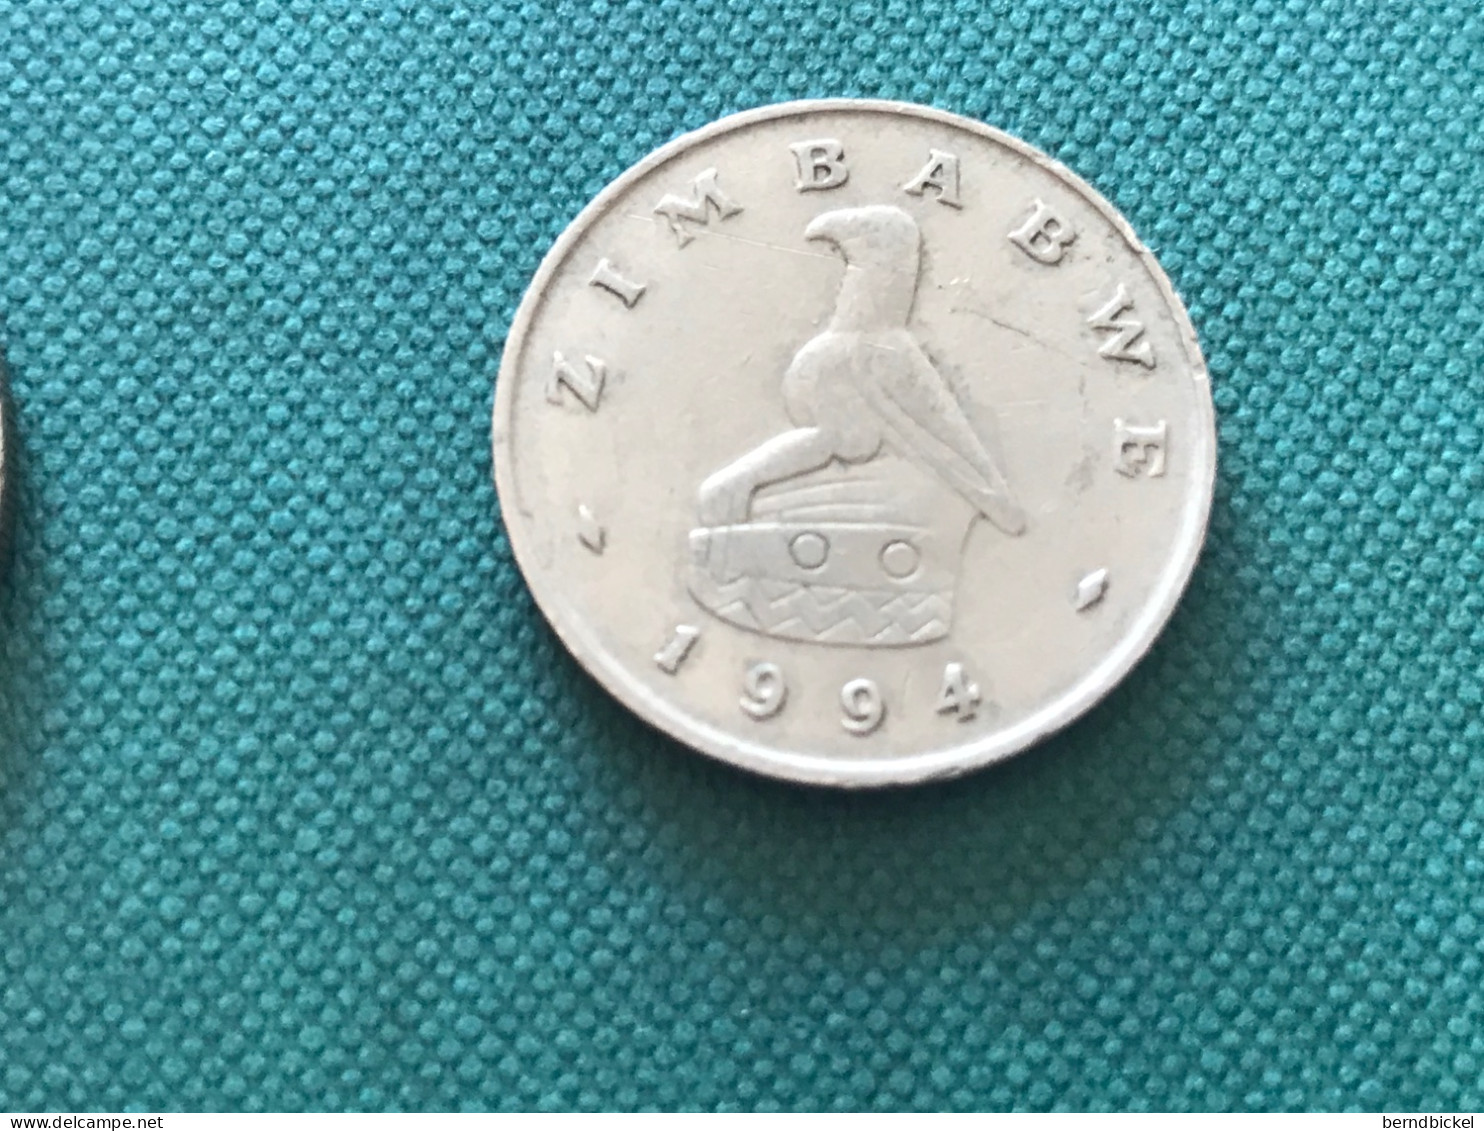 Münzen Münze Umlaufmünze Simbabwe 20 Cent 1994 - Simbabwe